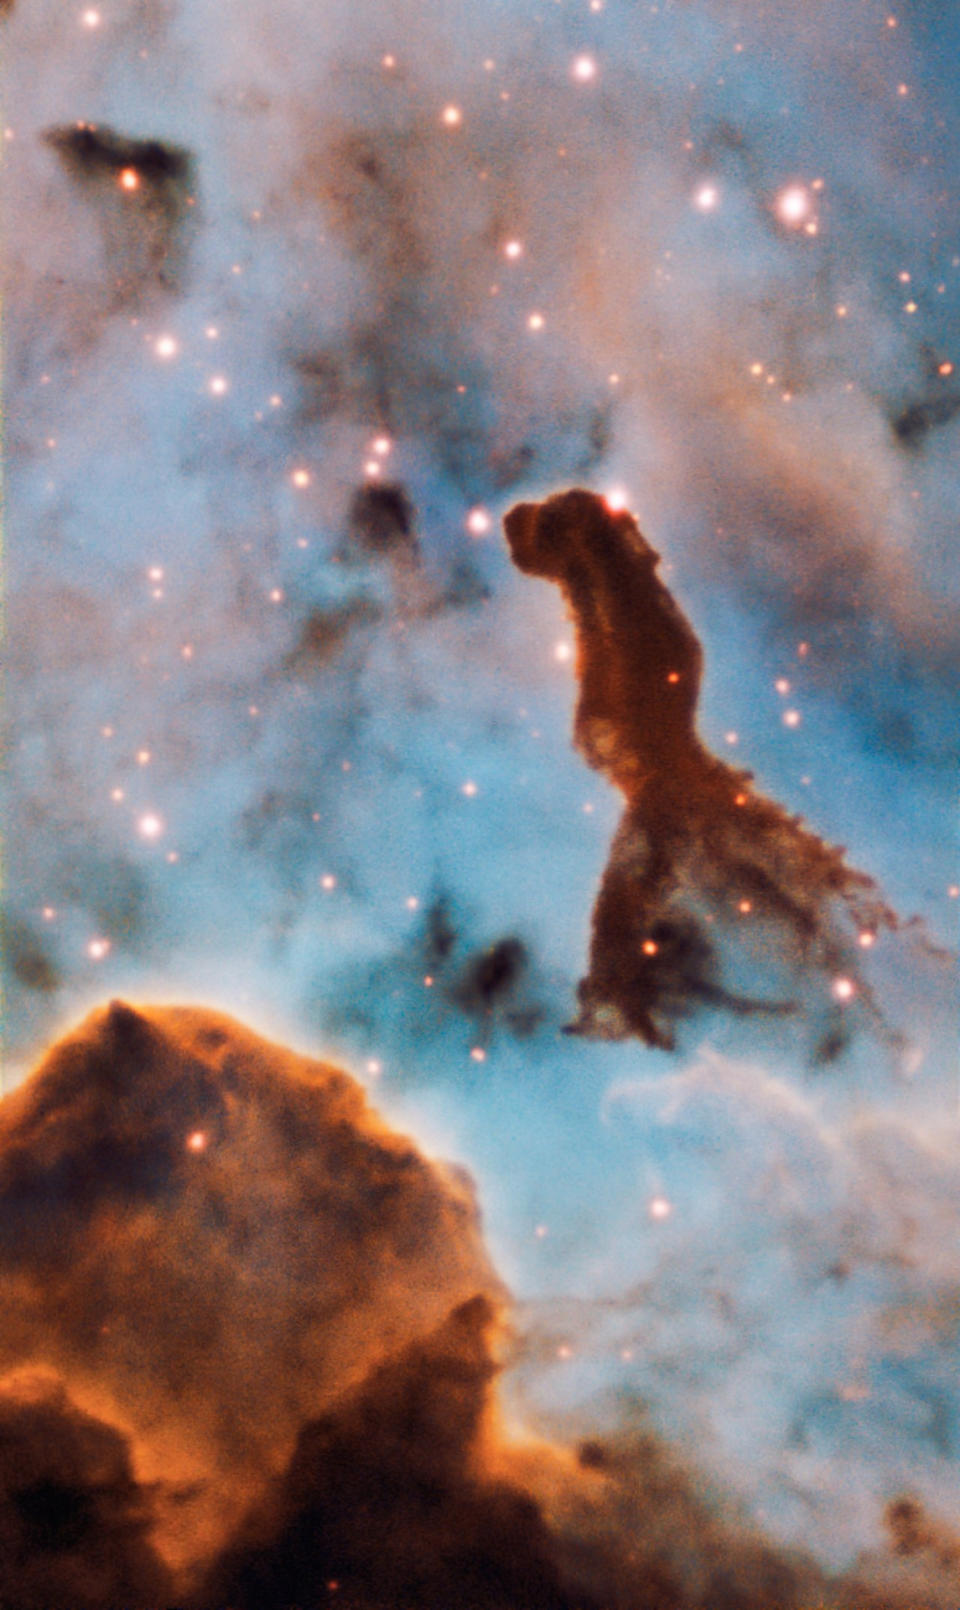 Este pilar forma parte del cúmulo estelar masivo Trumpler 14, en el interior de la nebulosa de Carina, a 7.500 años luz de distancia. (ESO/A. McLeod)